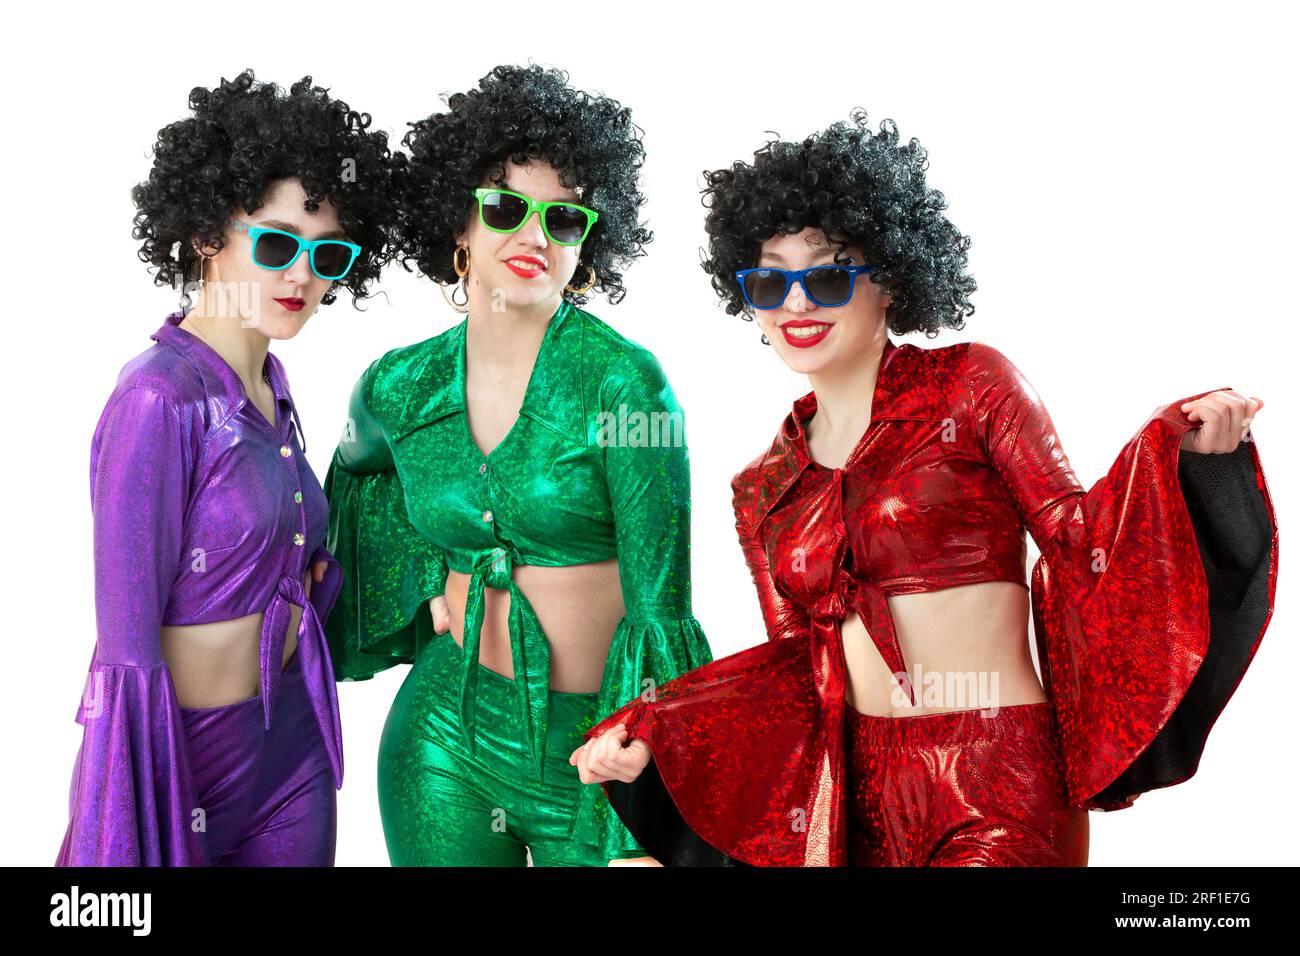 Un gruppo di ragazze da discoteca con parrucche afroamericane e costumi colorati su sfondo bianco. La moda degli anni Settanta e Ottanta. Foto Stock